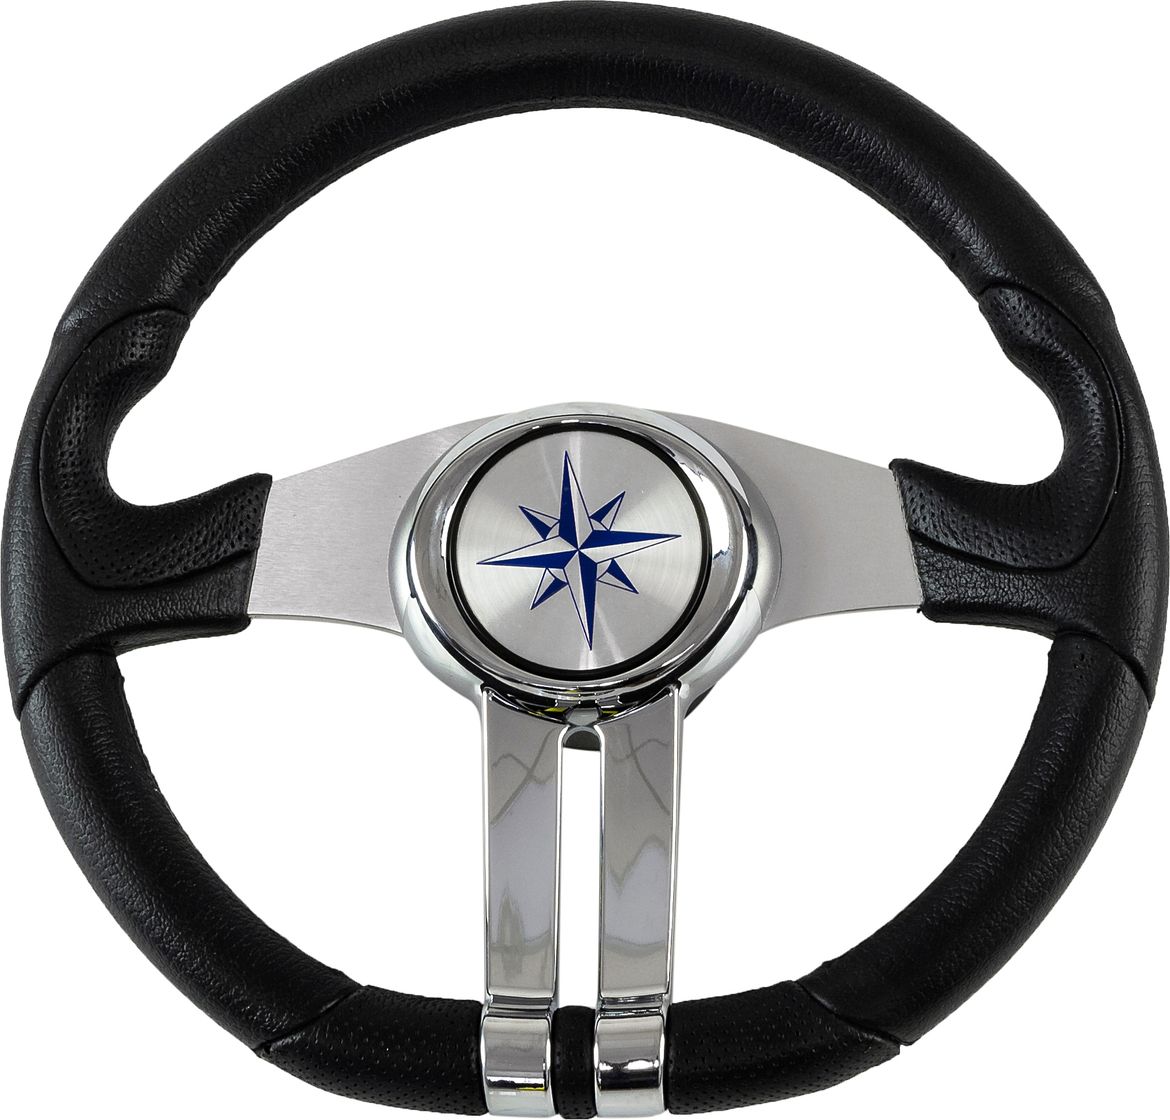 Рулевое колесо BALTIC обод черный, спицы серебряные д. 320 мм VN133203-01 рулевое колесо elba sport обод спицы серебряные д 320 мм vn13321 01